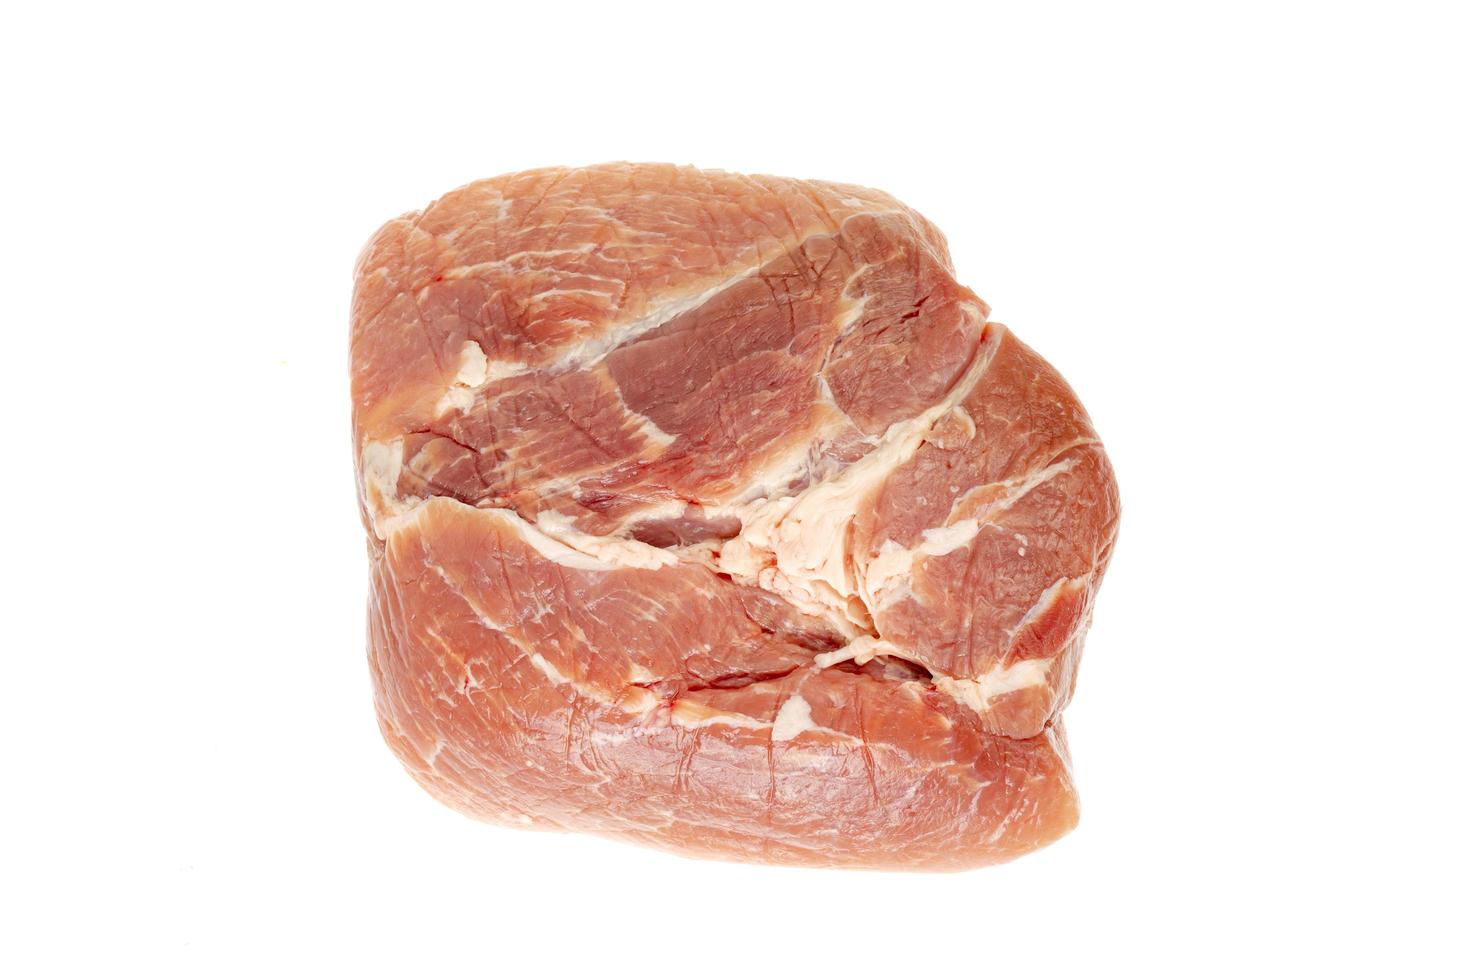 pezzo di carne di maiale fresca cruda isolata su fondo bianco. foto in studio